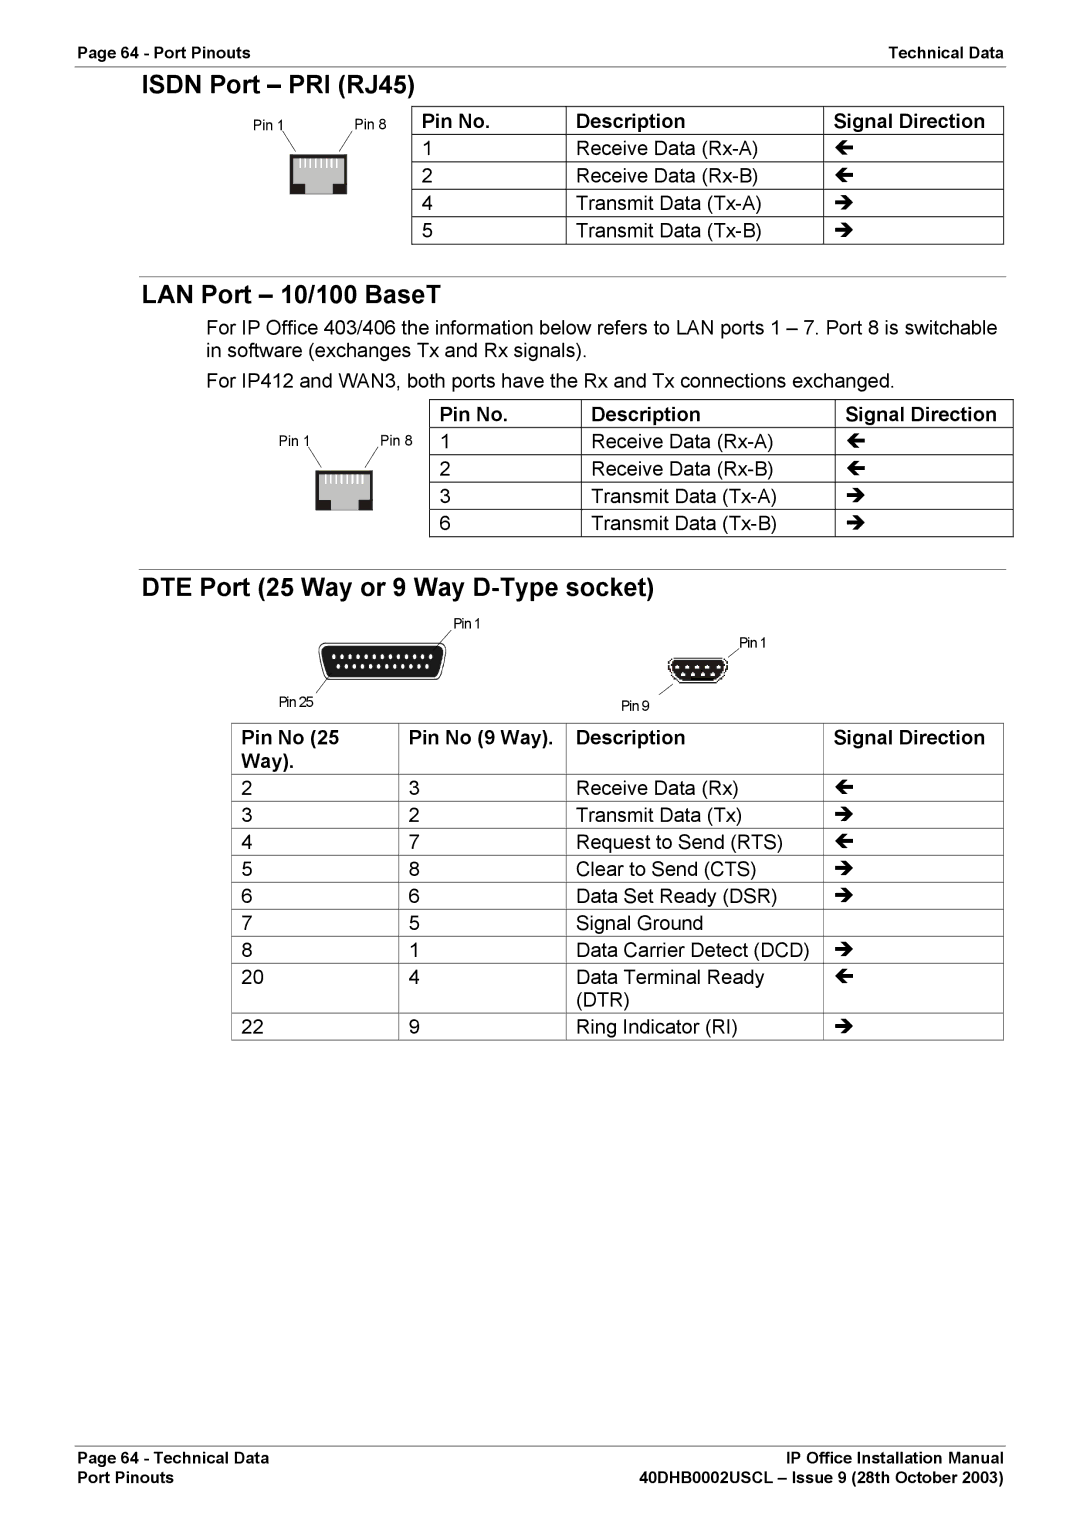 Avaya IP Office Phone Isdn Port PRI RJ45, LAN Port 10/100 BaseT, DTE Port 25 Way or 9 Way D-Type socket, Ring Indicator RI 